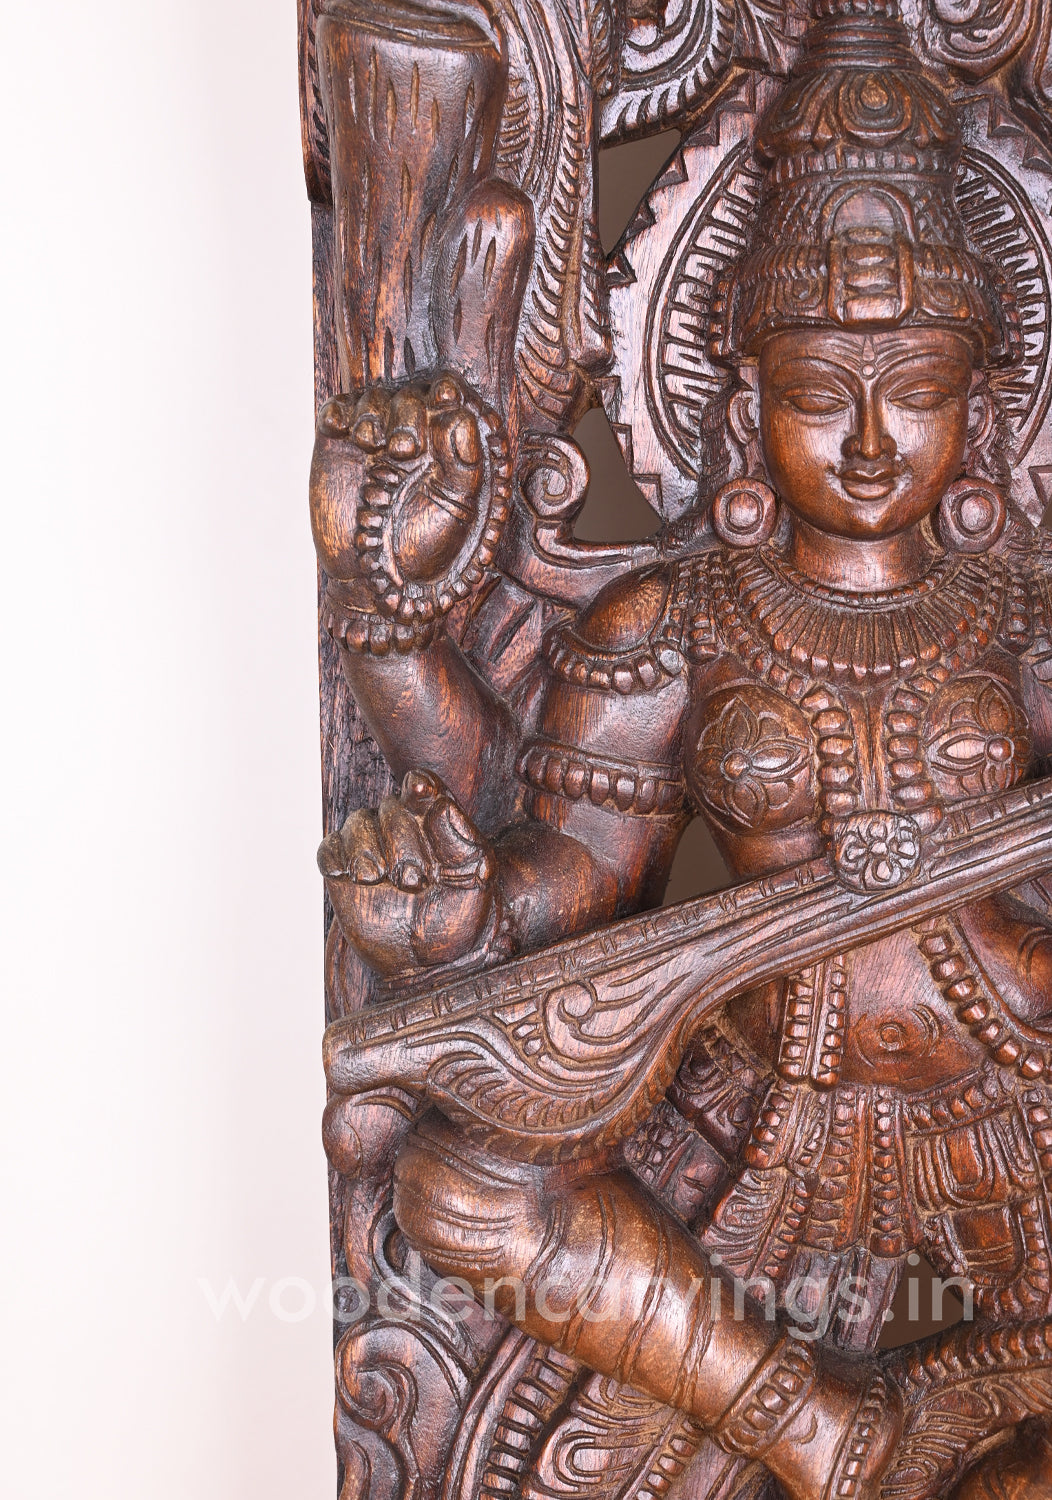 Mesmerizing Abhinaya Saraswathi Dancing on Lotus and Holding Veena Floral Design Wall Mount 48"